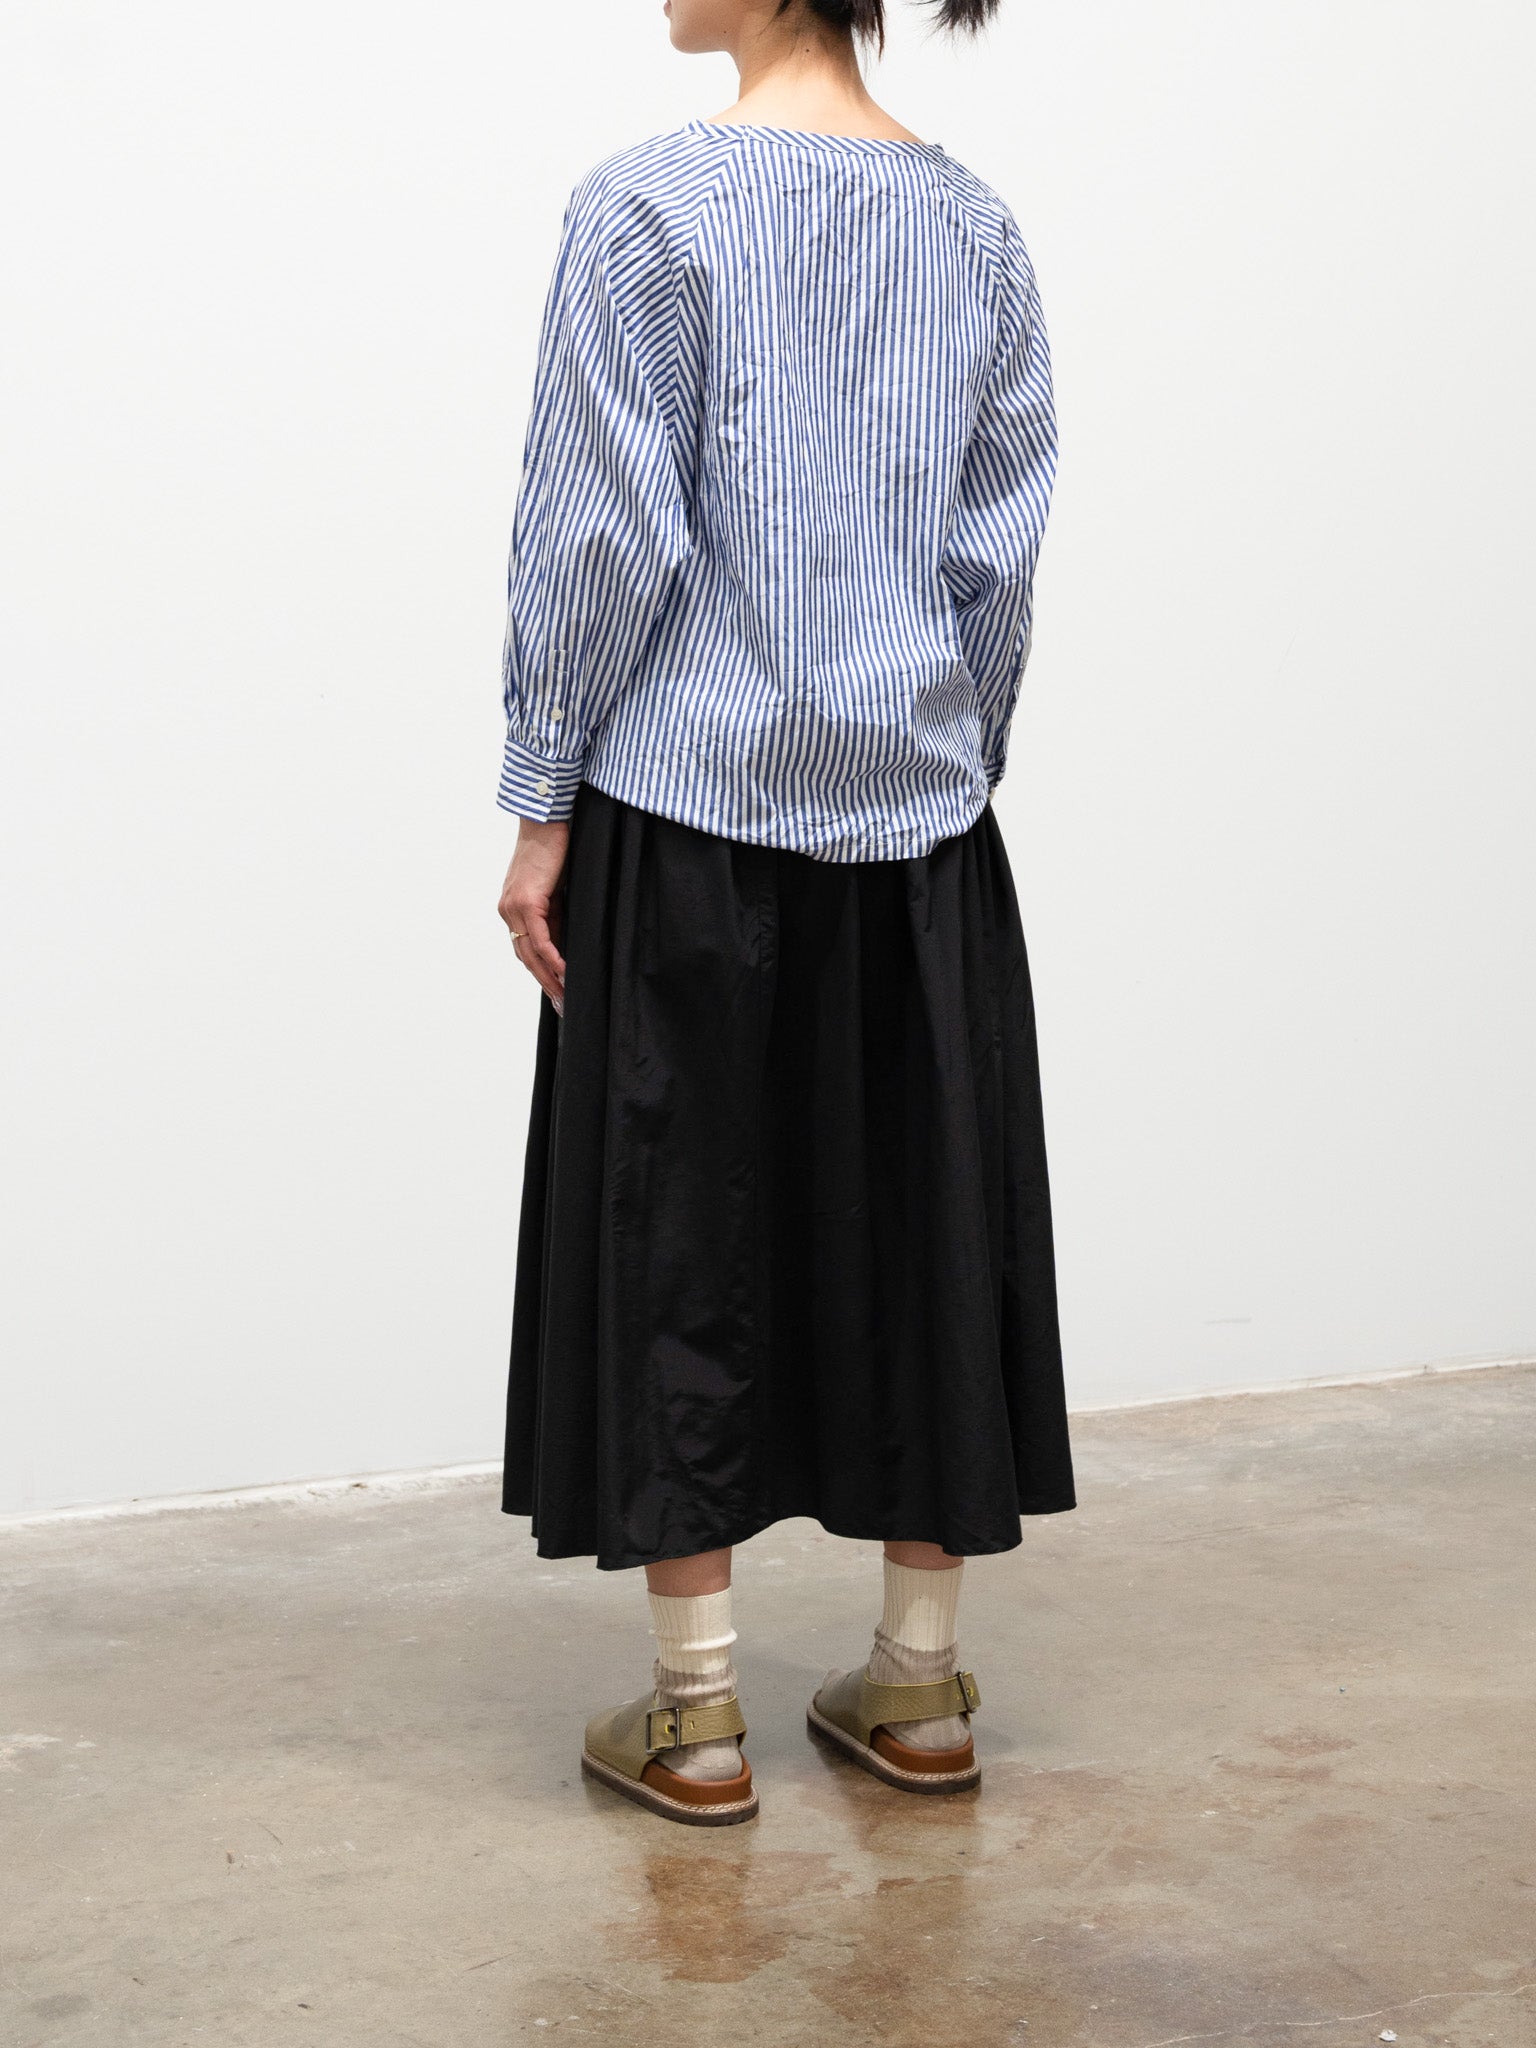 Namu Shop - ICHI Washer Pullover Top - Blue Stripe